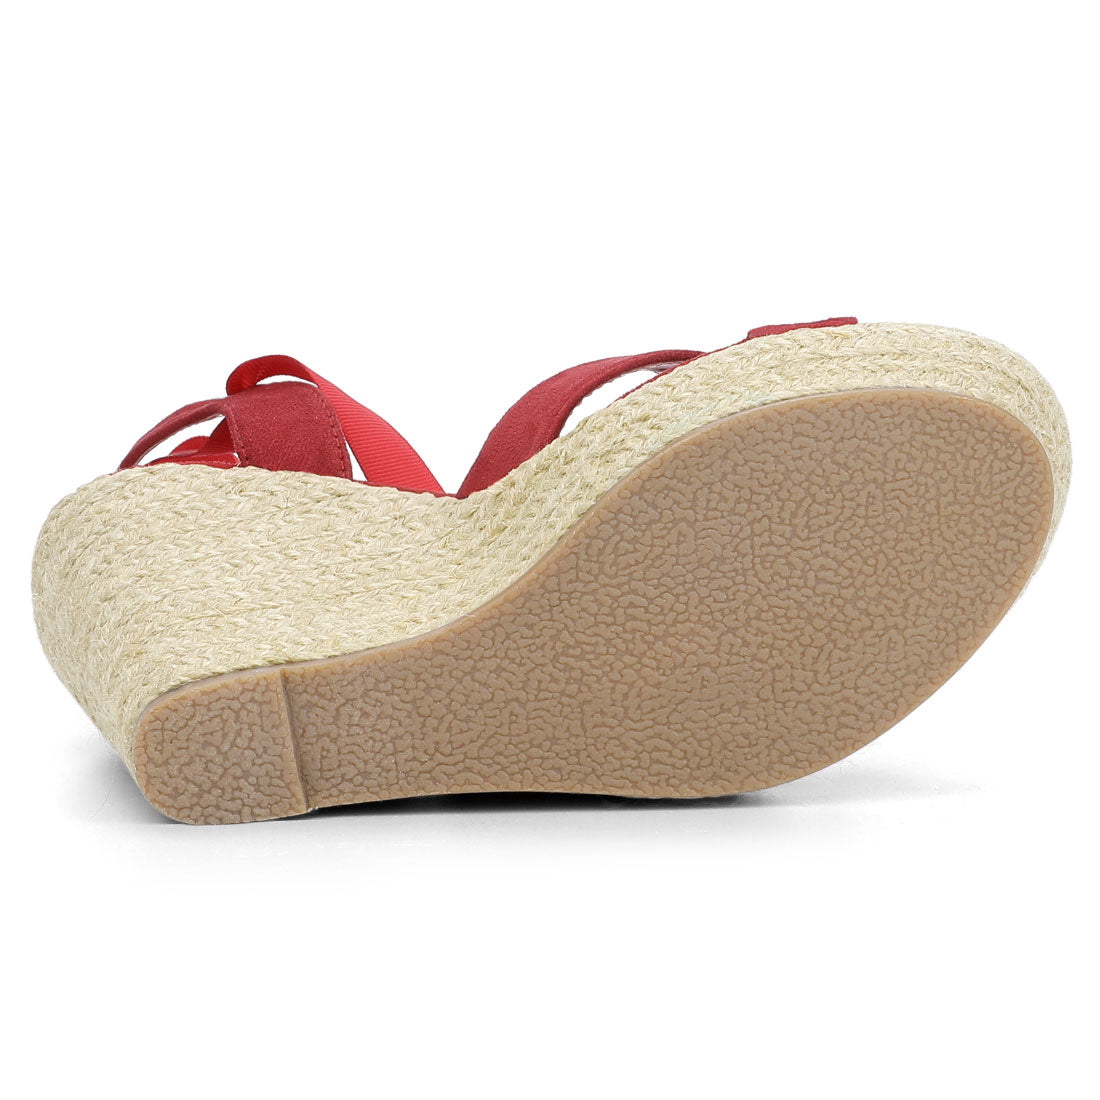 Allegra K Espadrille Platform Lace Up Wedges Sandals